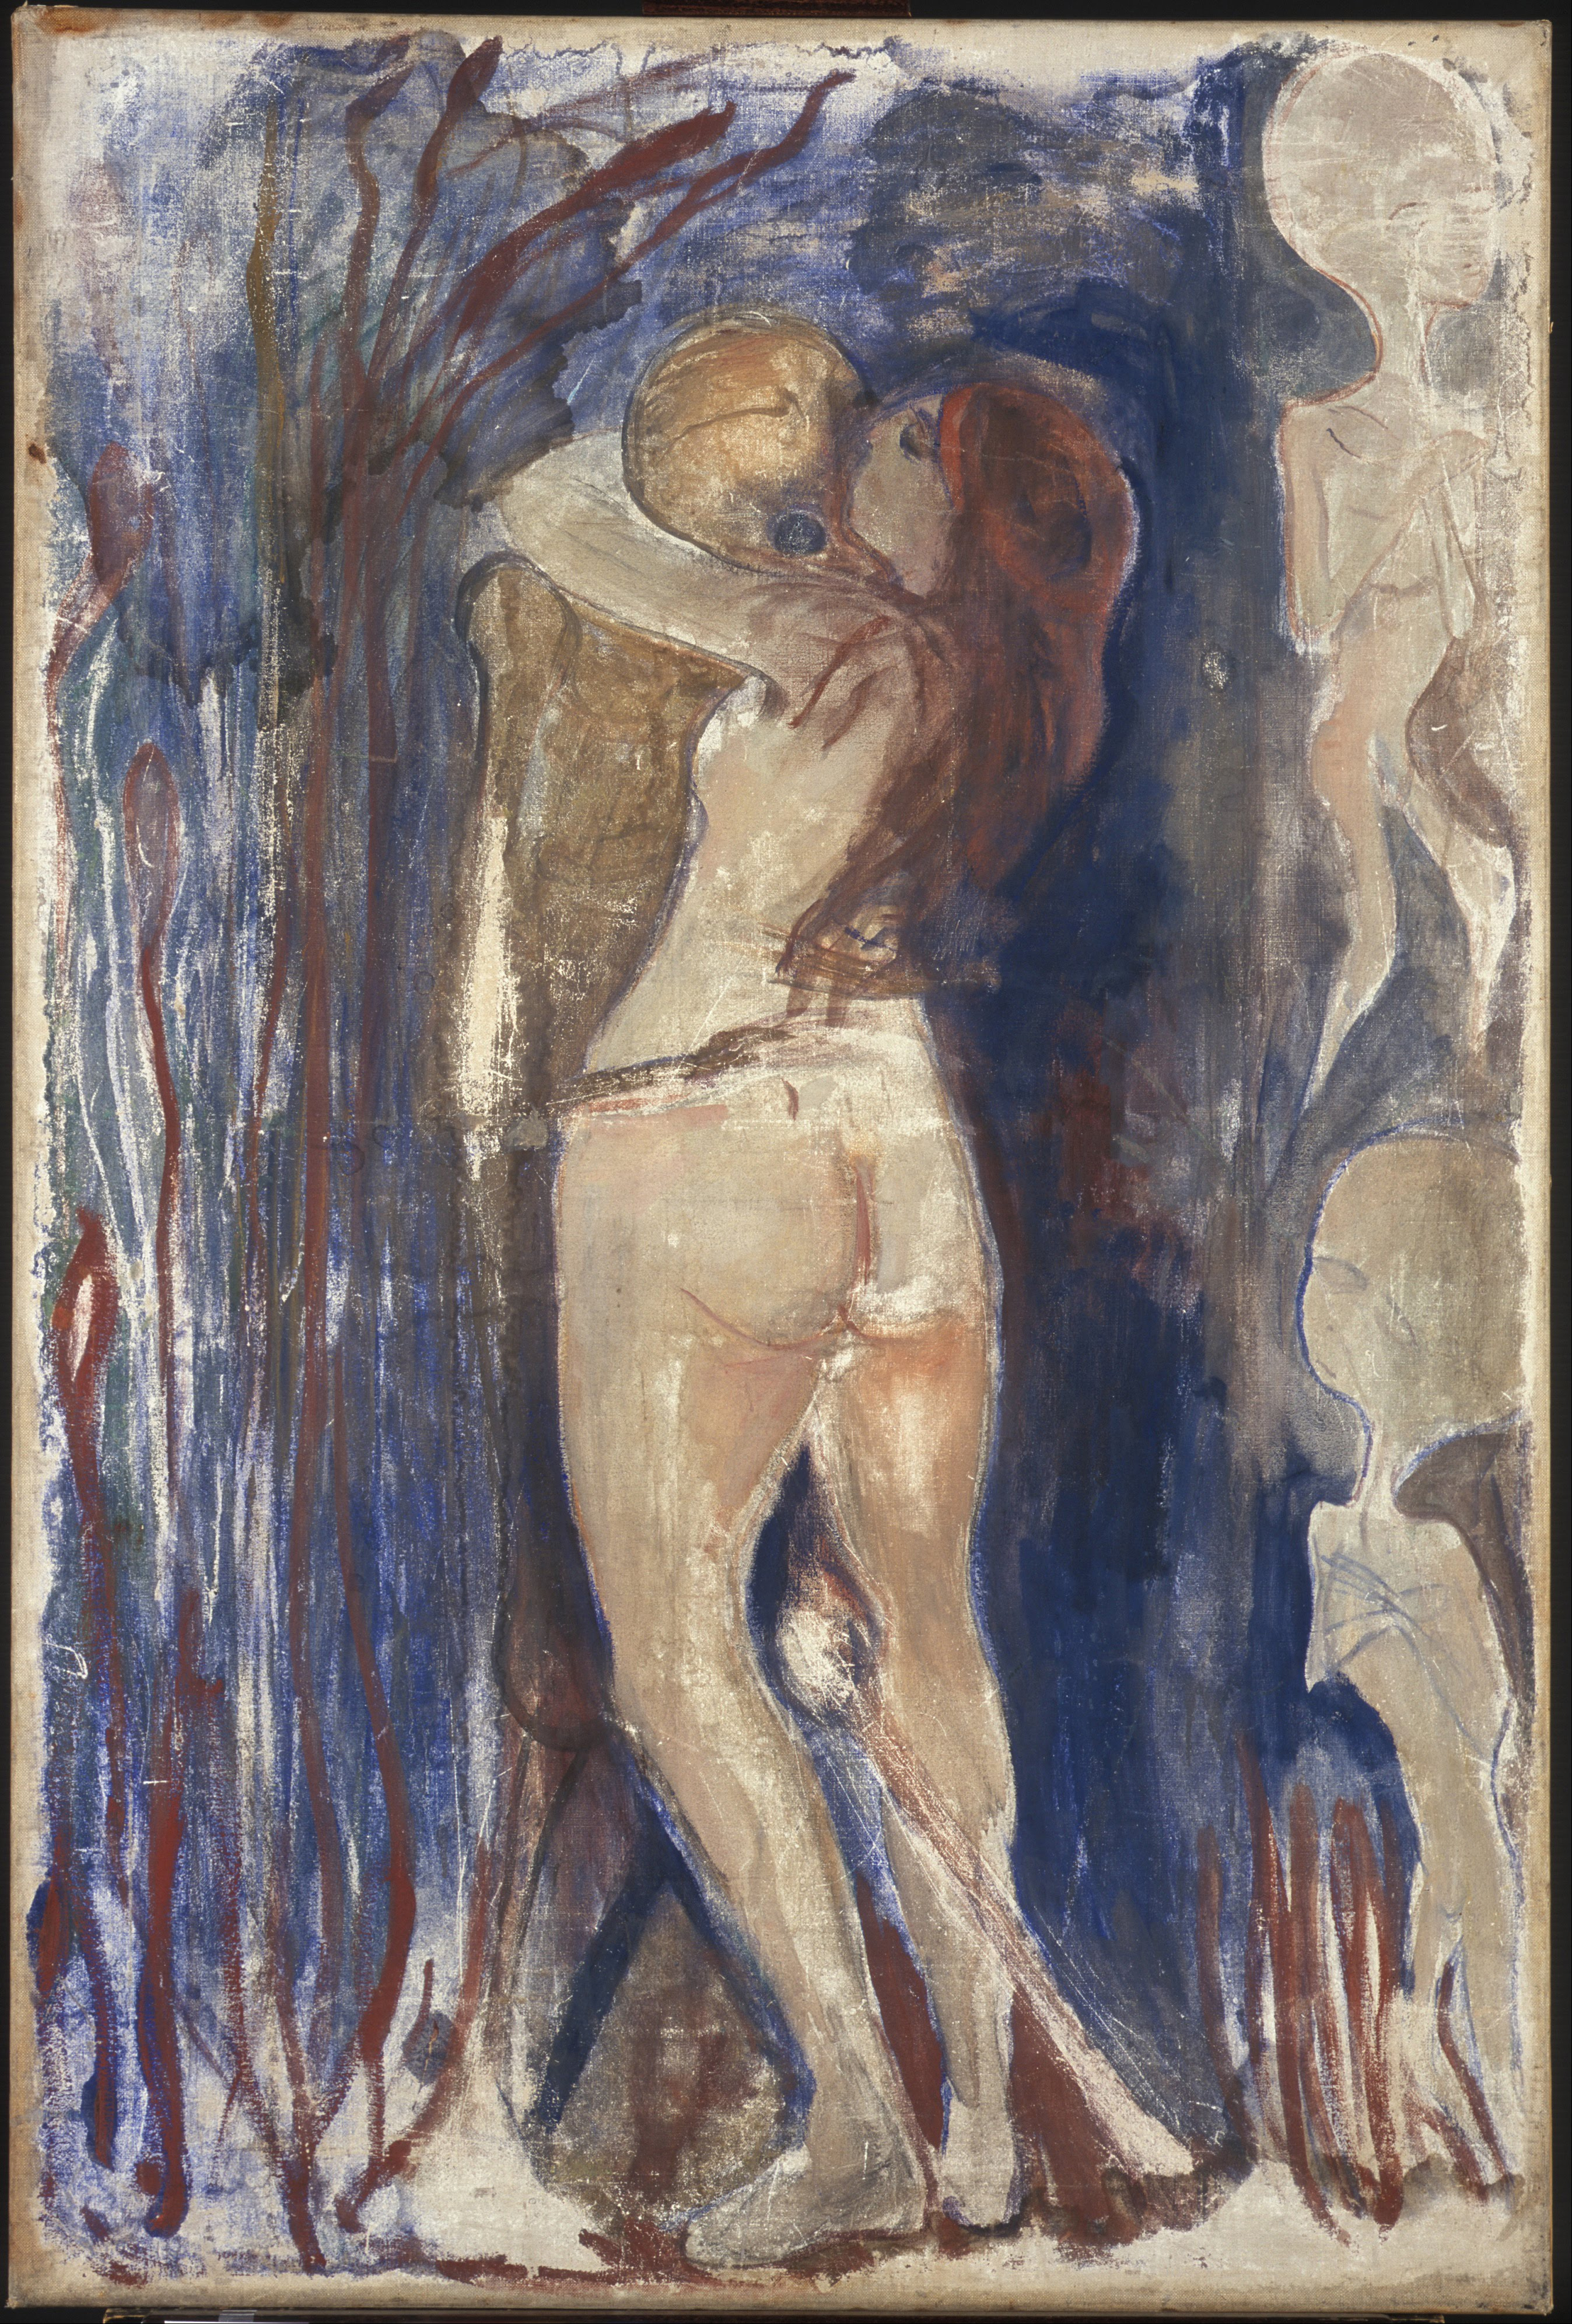 死亡與生命 by Edvard Munch - 1894 - 86 x 128 cm 